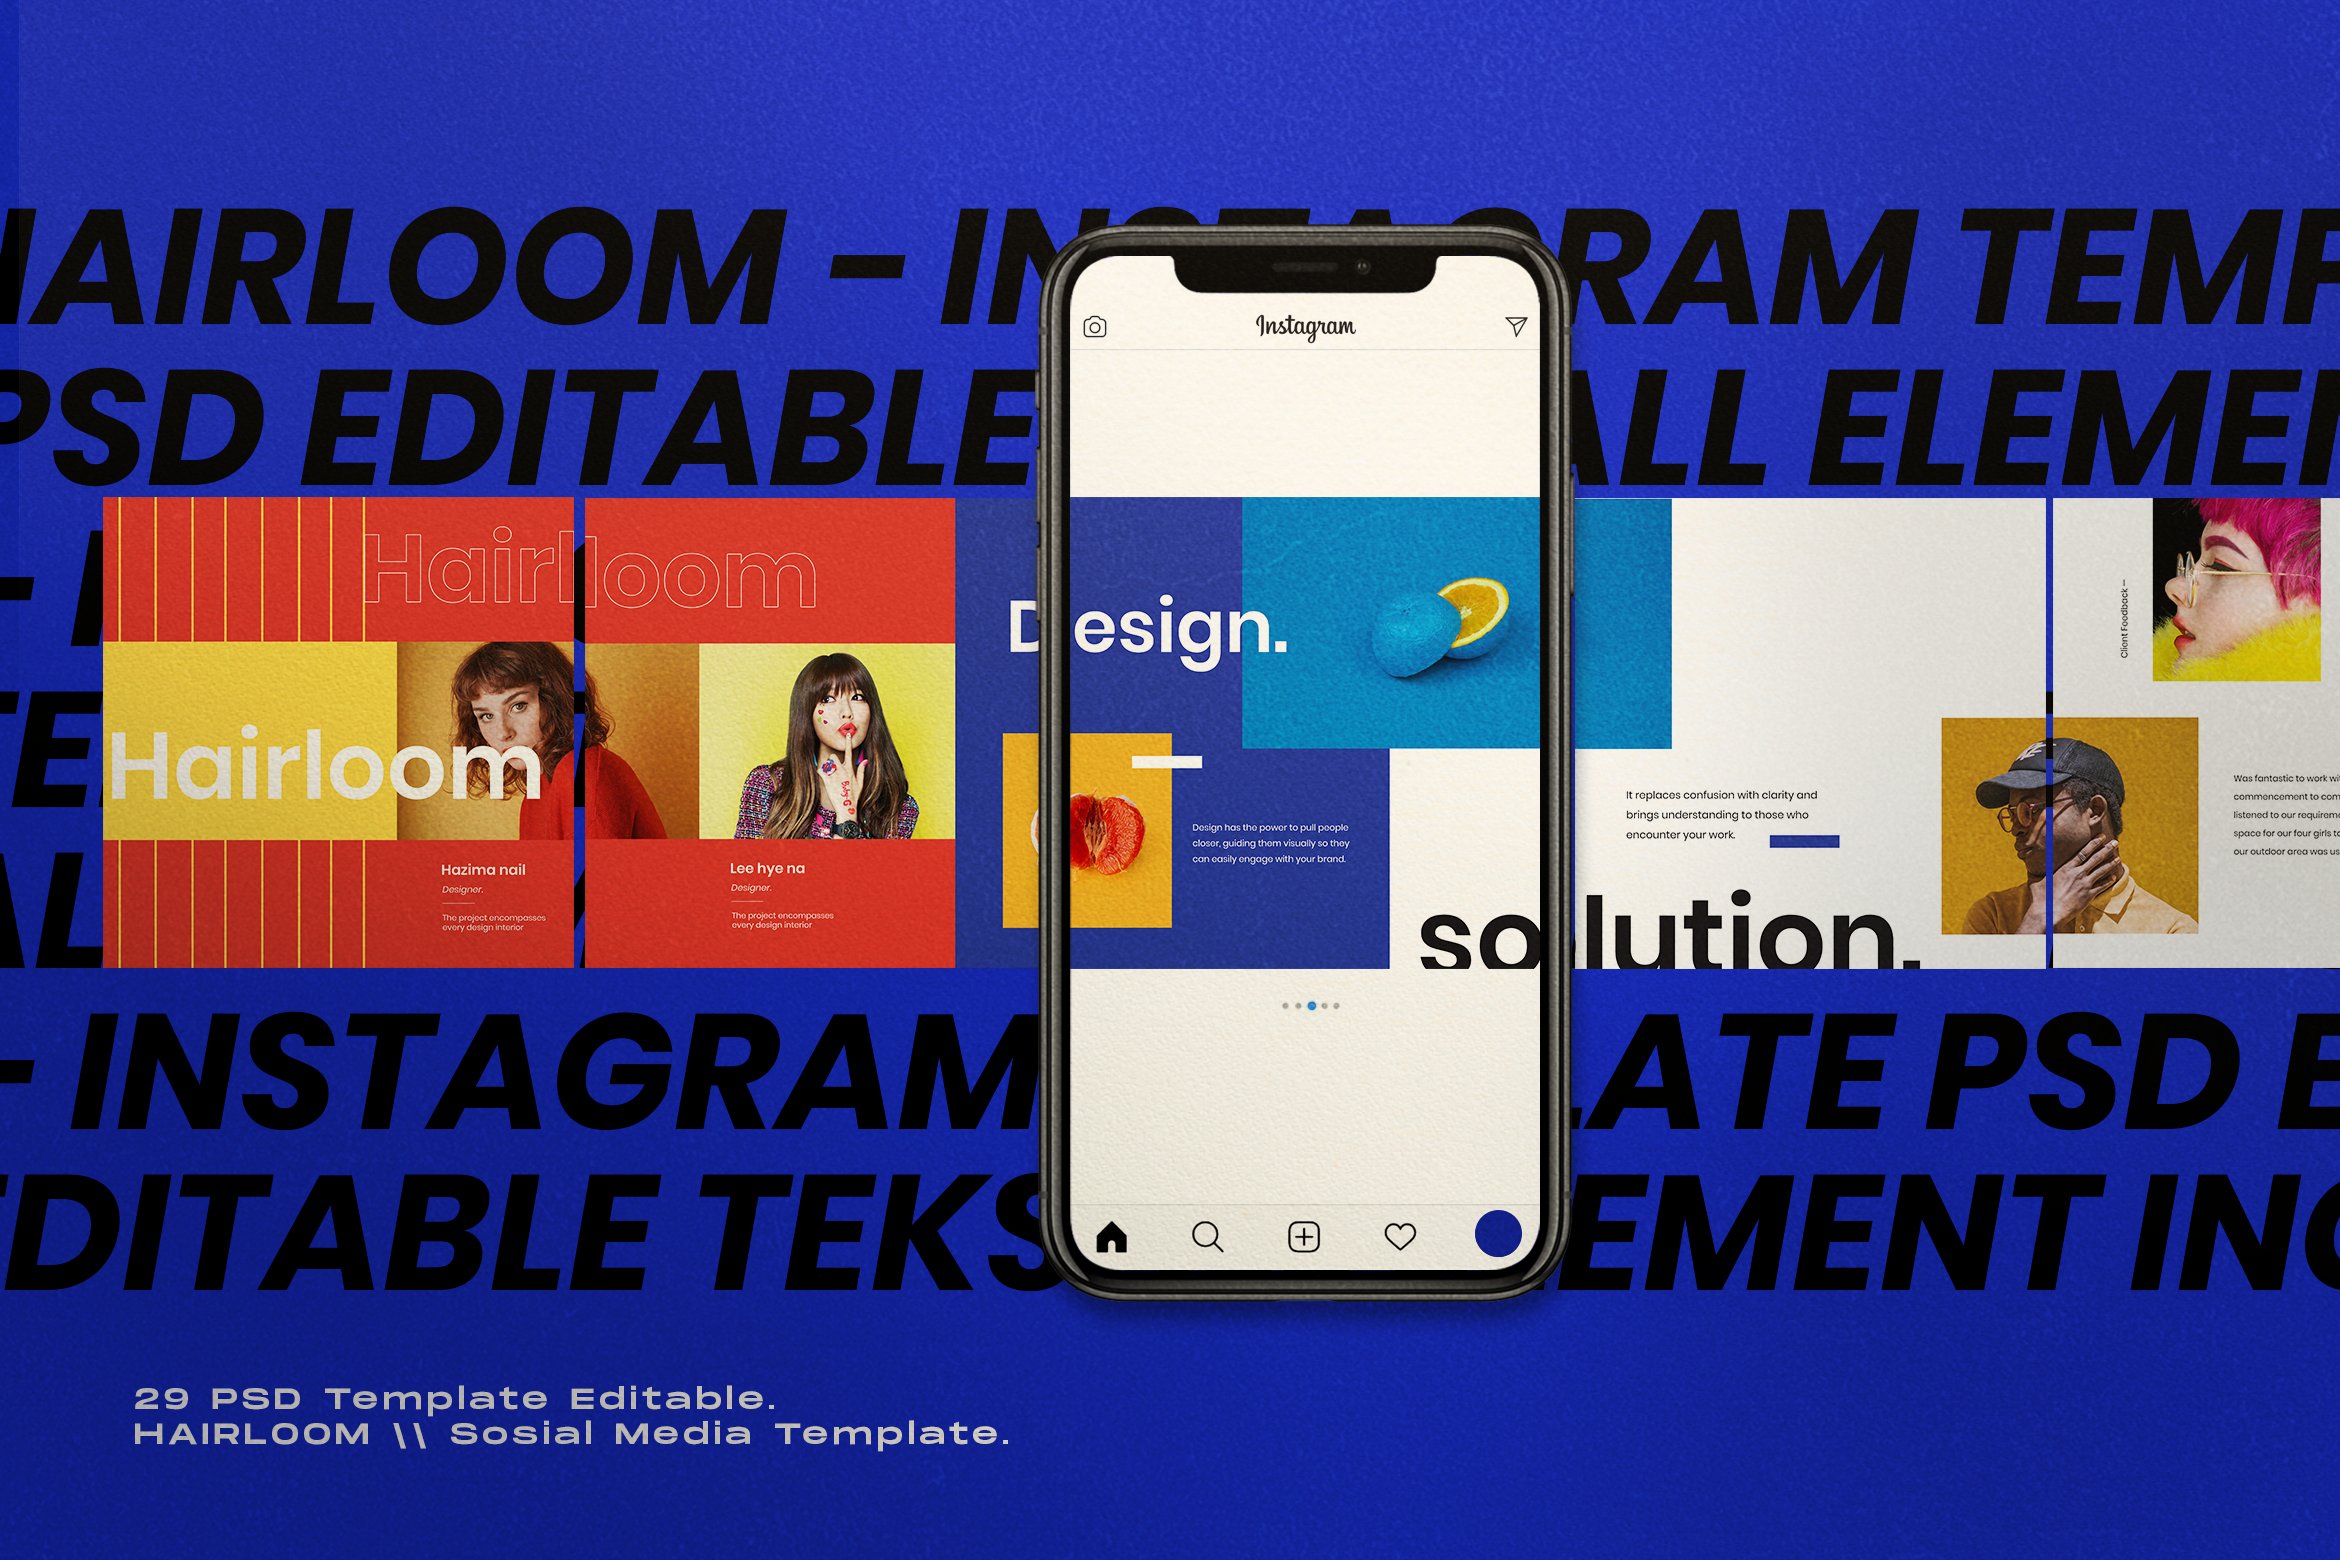 869 明亮色块排版的社交媒体海报广告设计模板 Hairloom – Social Media Template + Stories